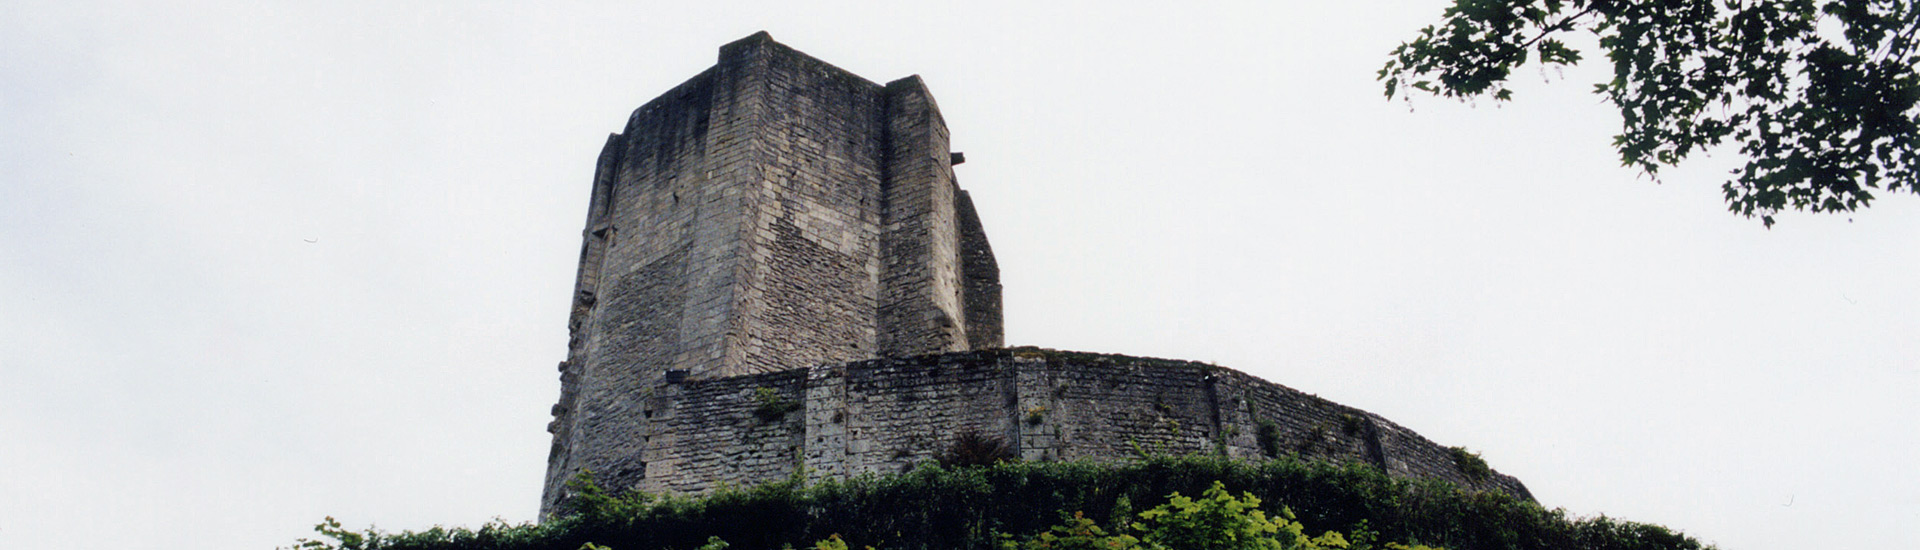 Chateau de Gisors